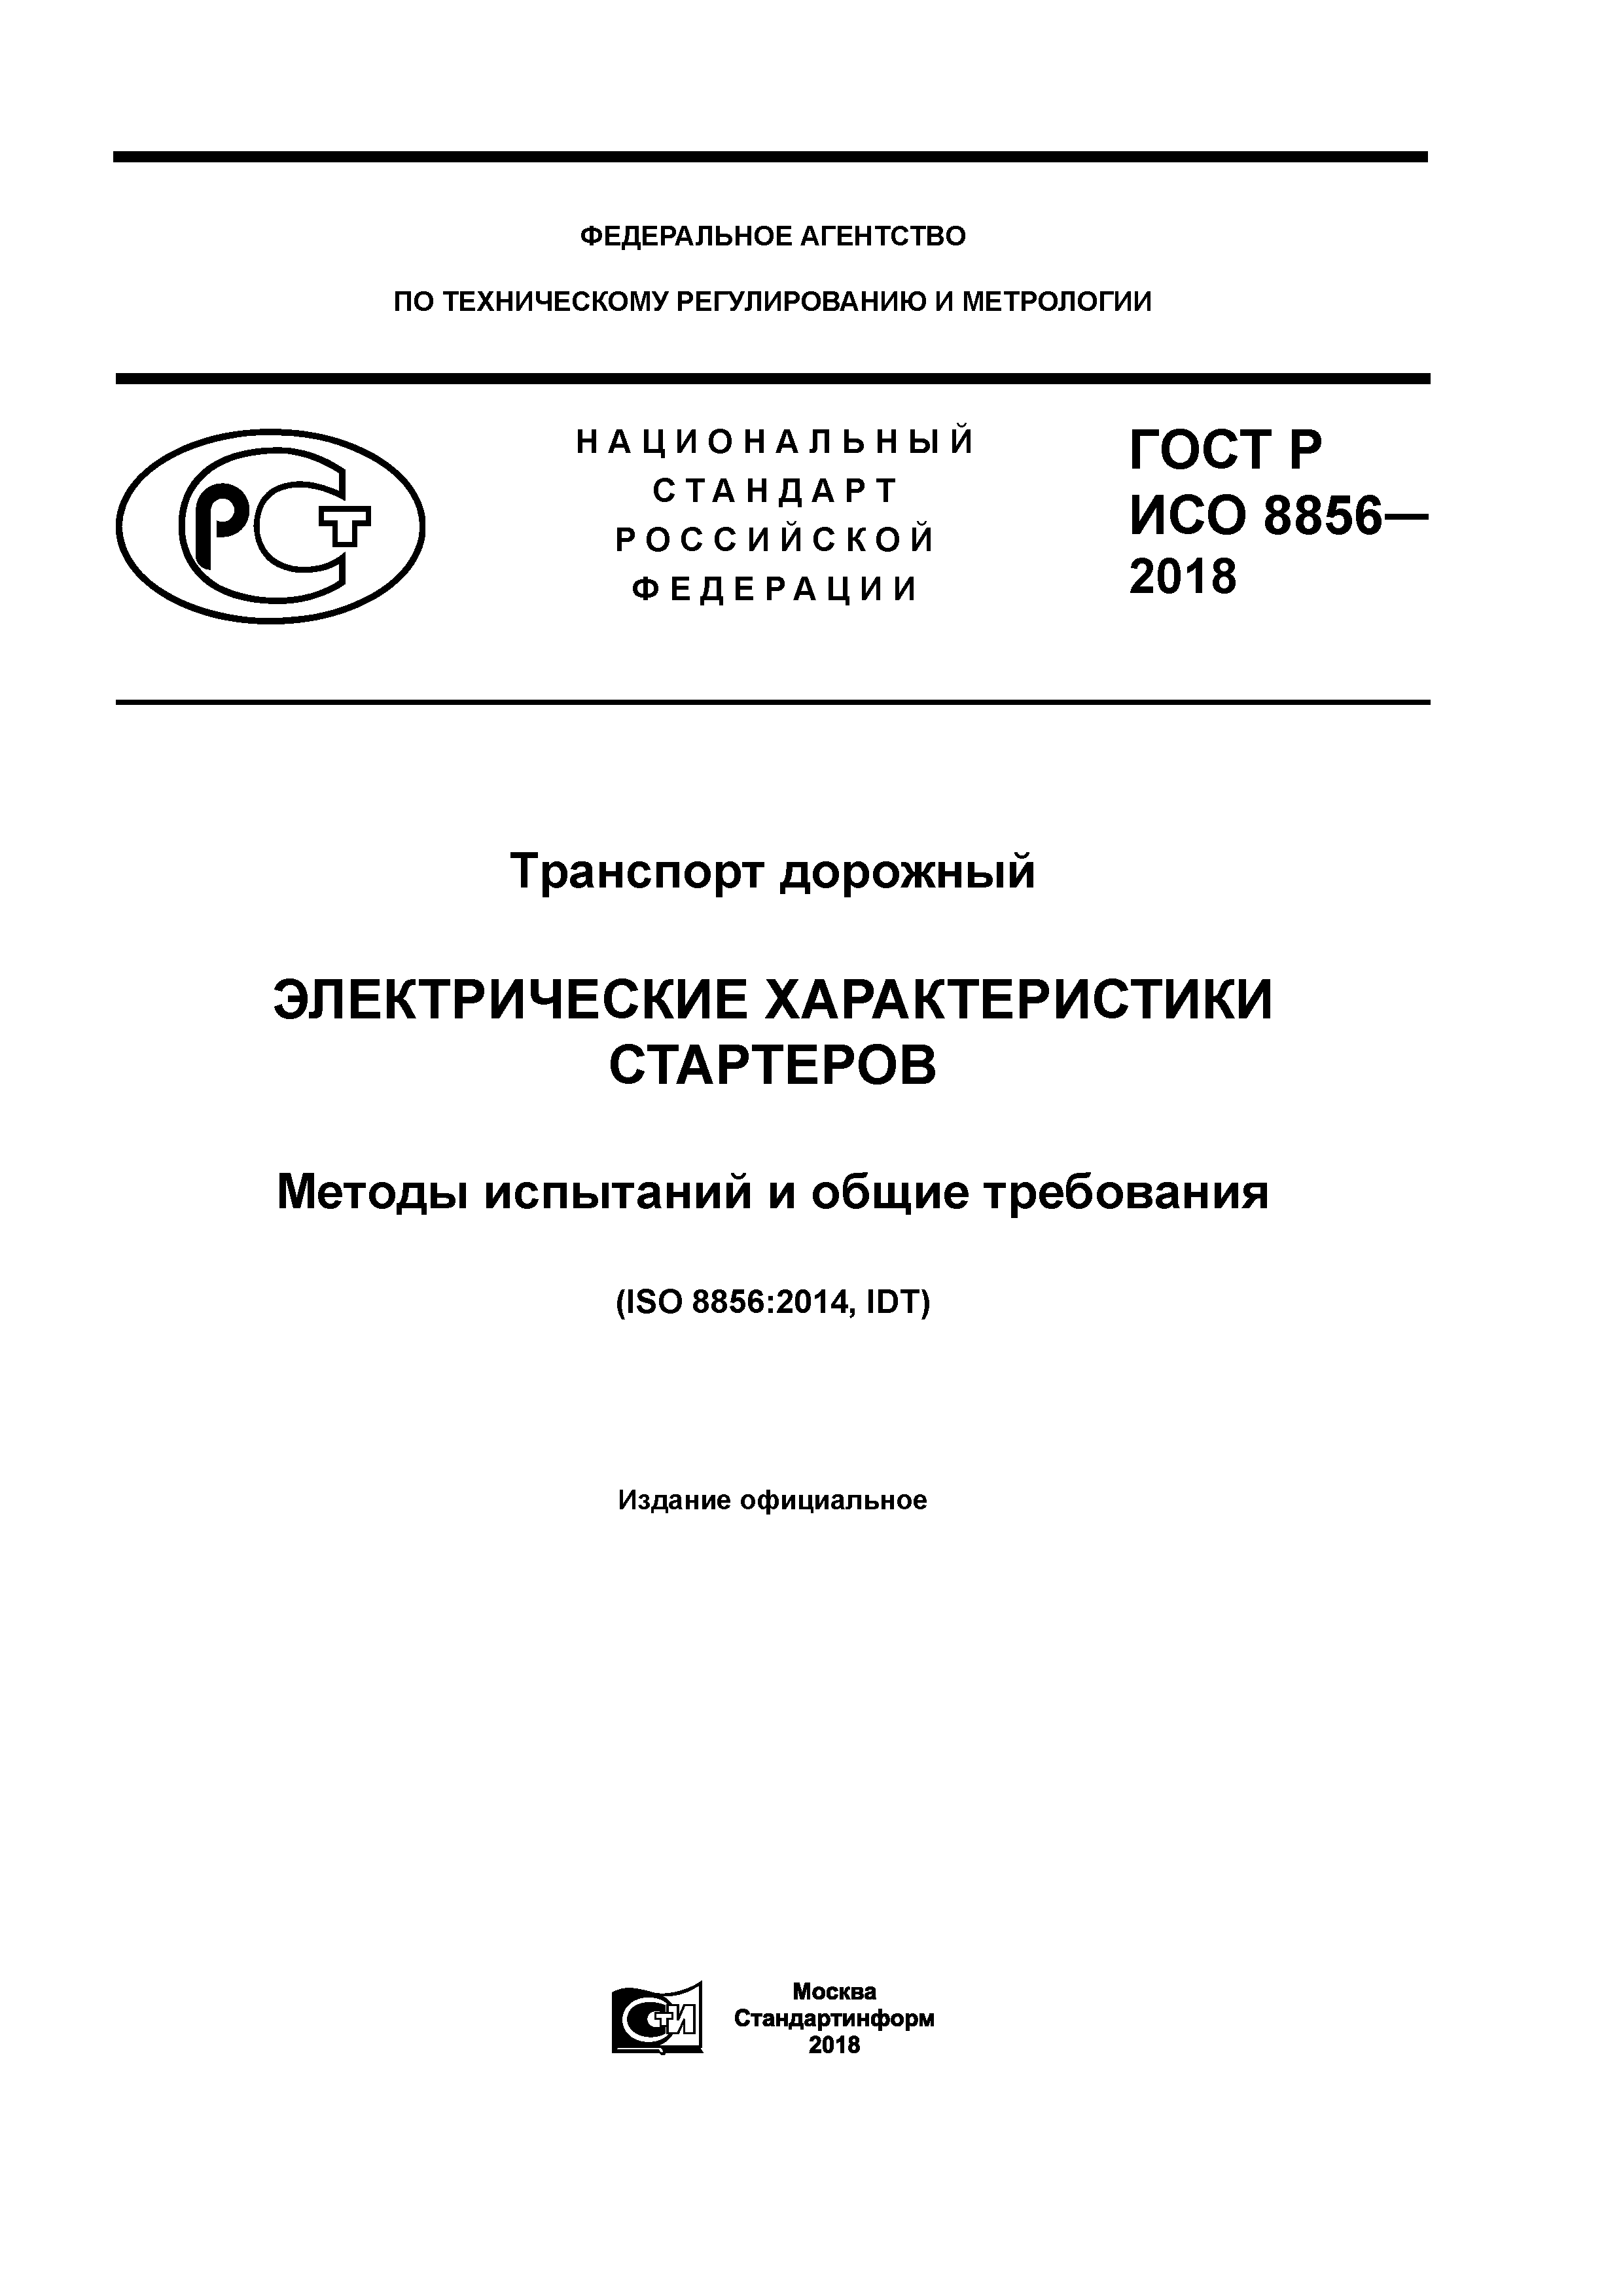 ГОСТ Р ИСО 8856-2018